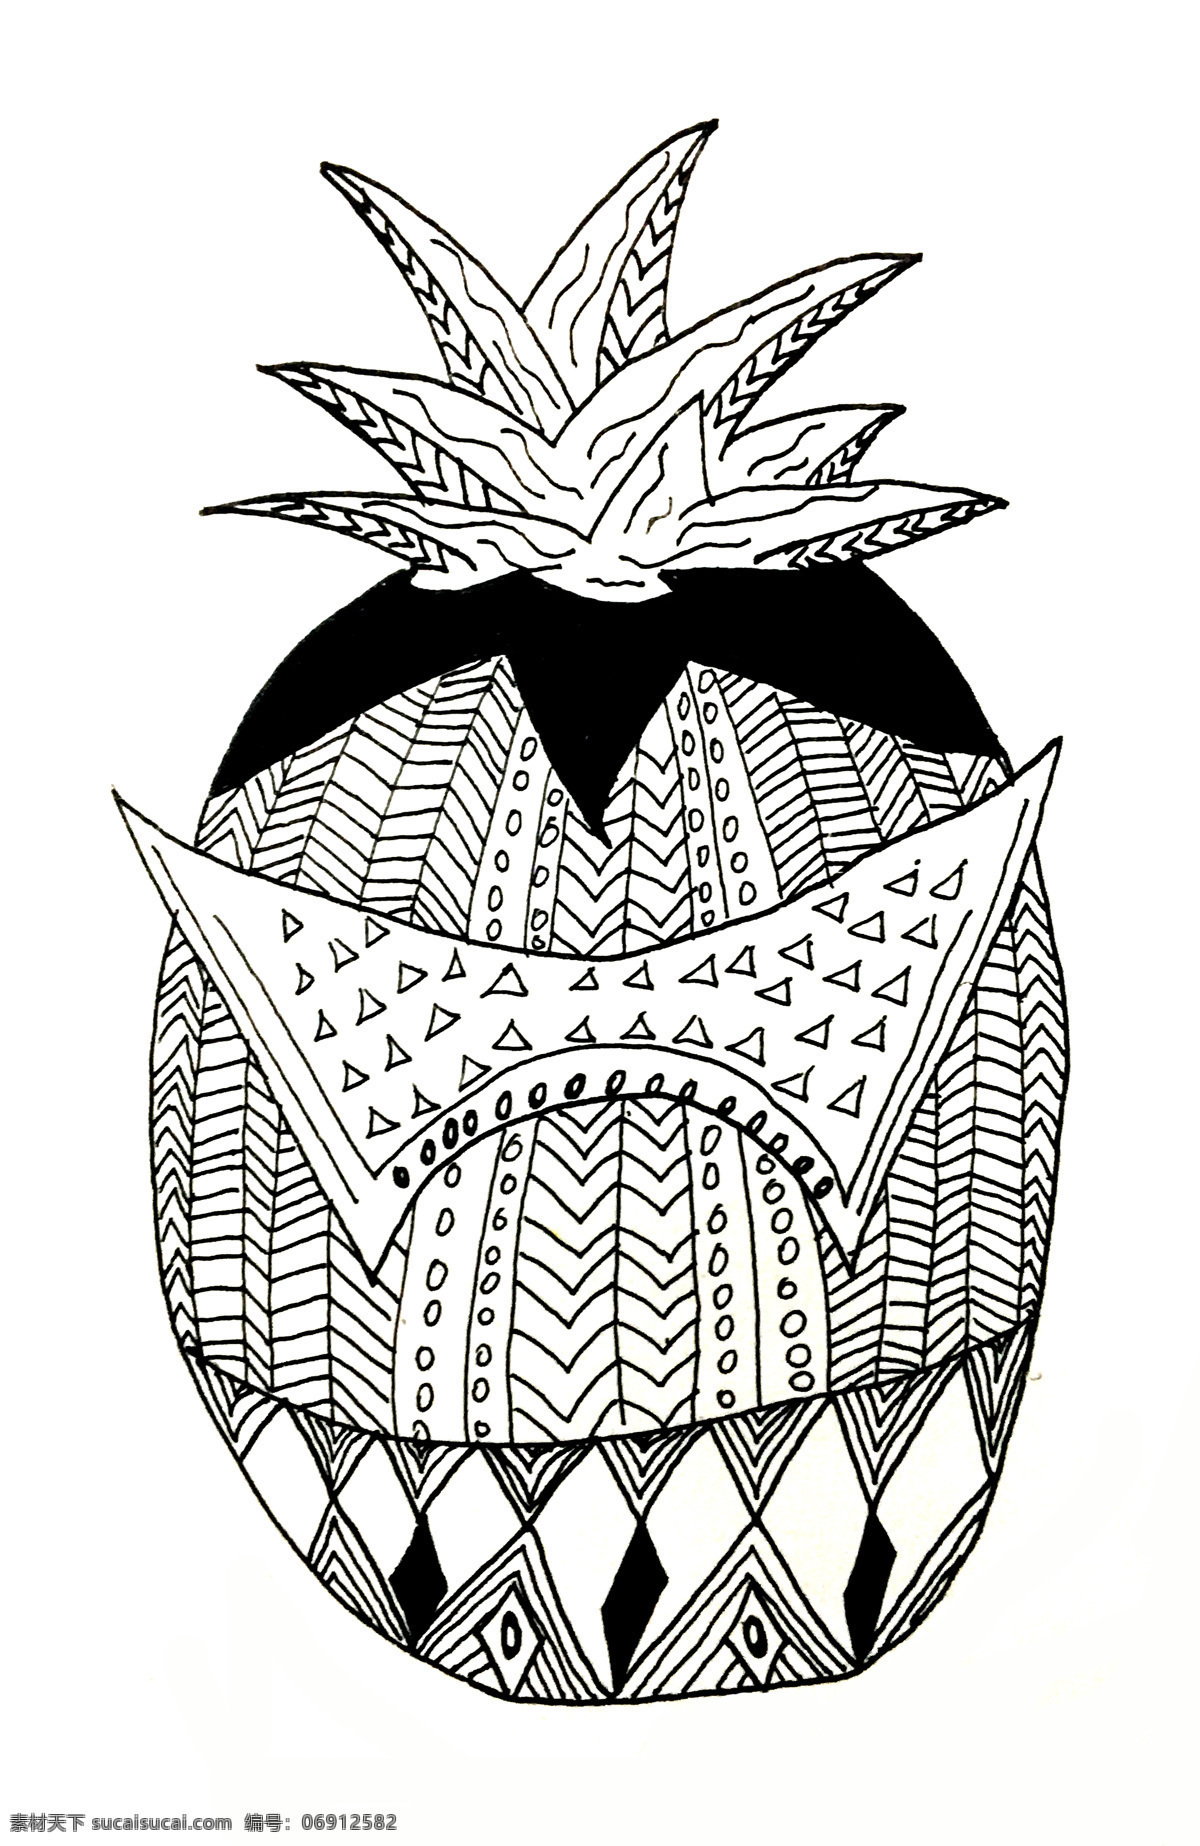 菠萝创意元素 菠萝 创意 线条 元素 装饰 三角形 忍者